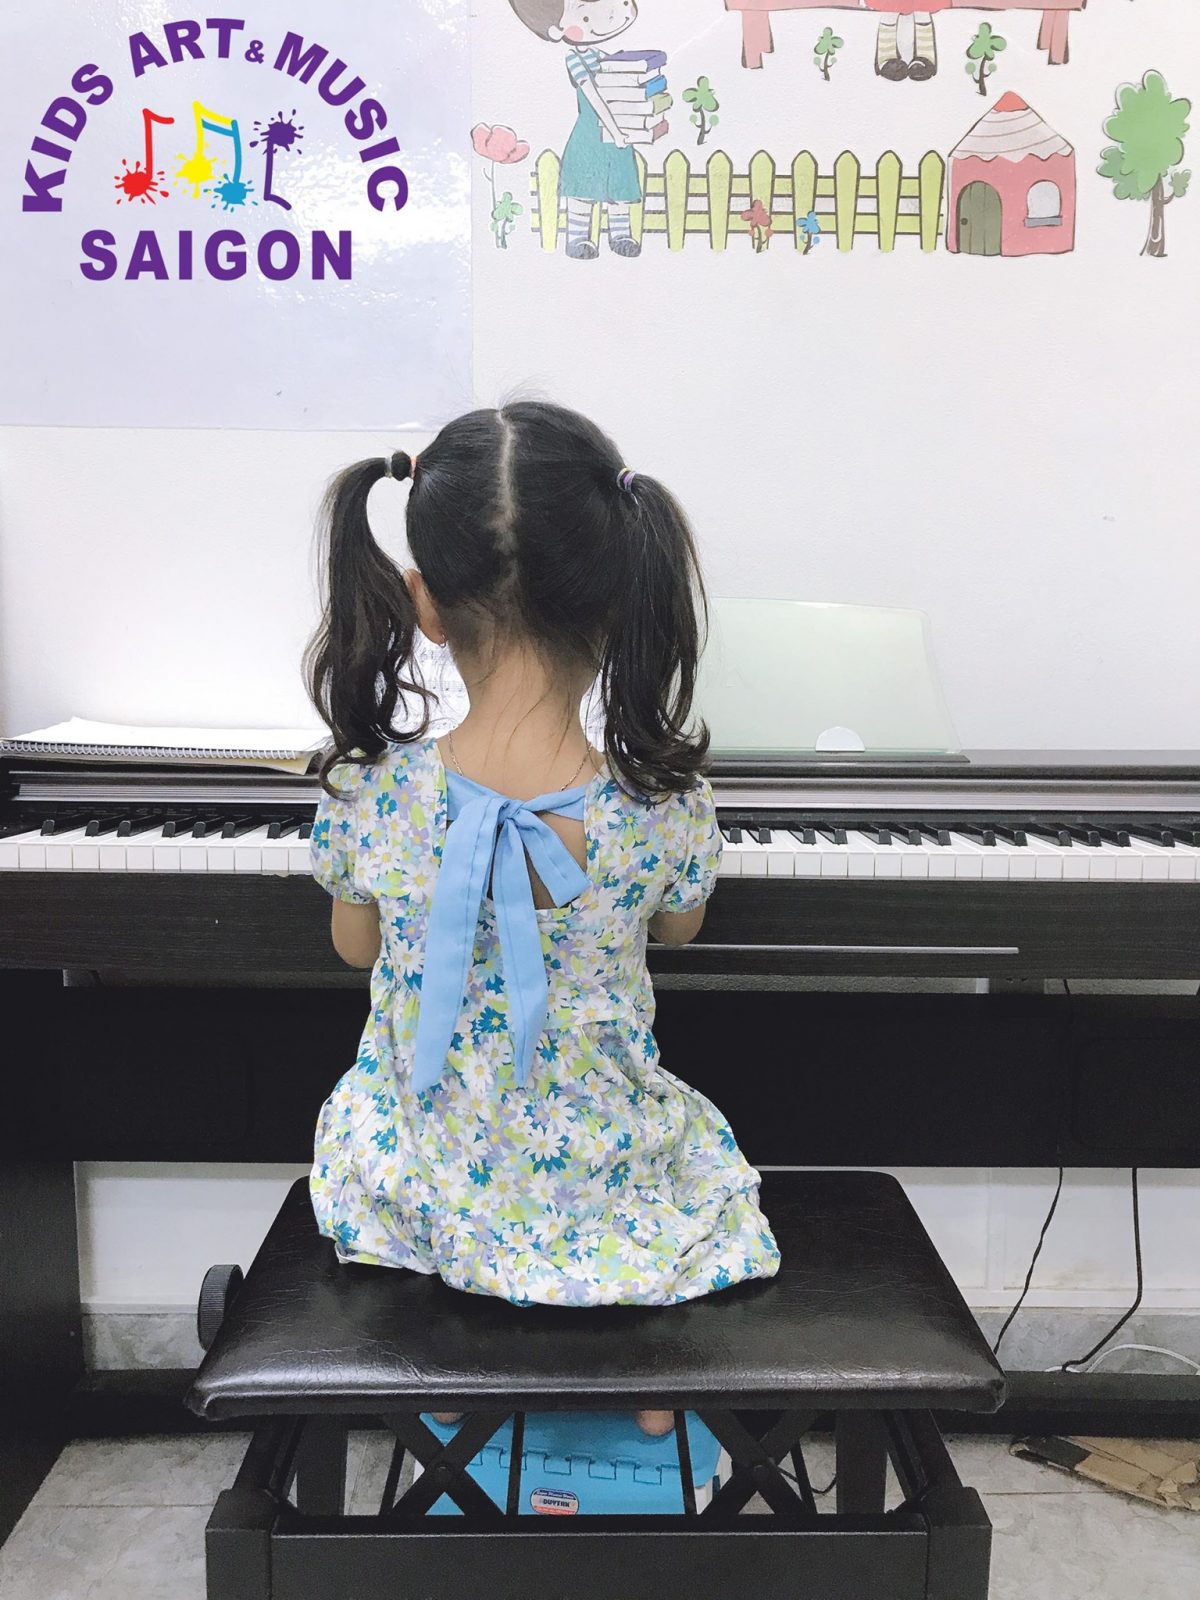 Phương pháp dạy piano cho trẻ hiệu quả